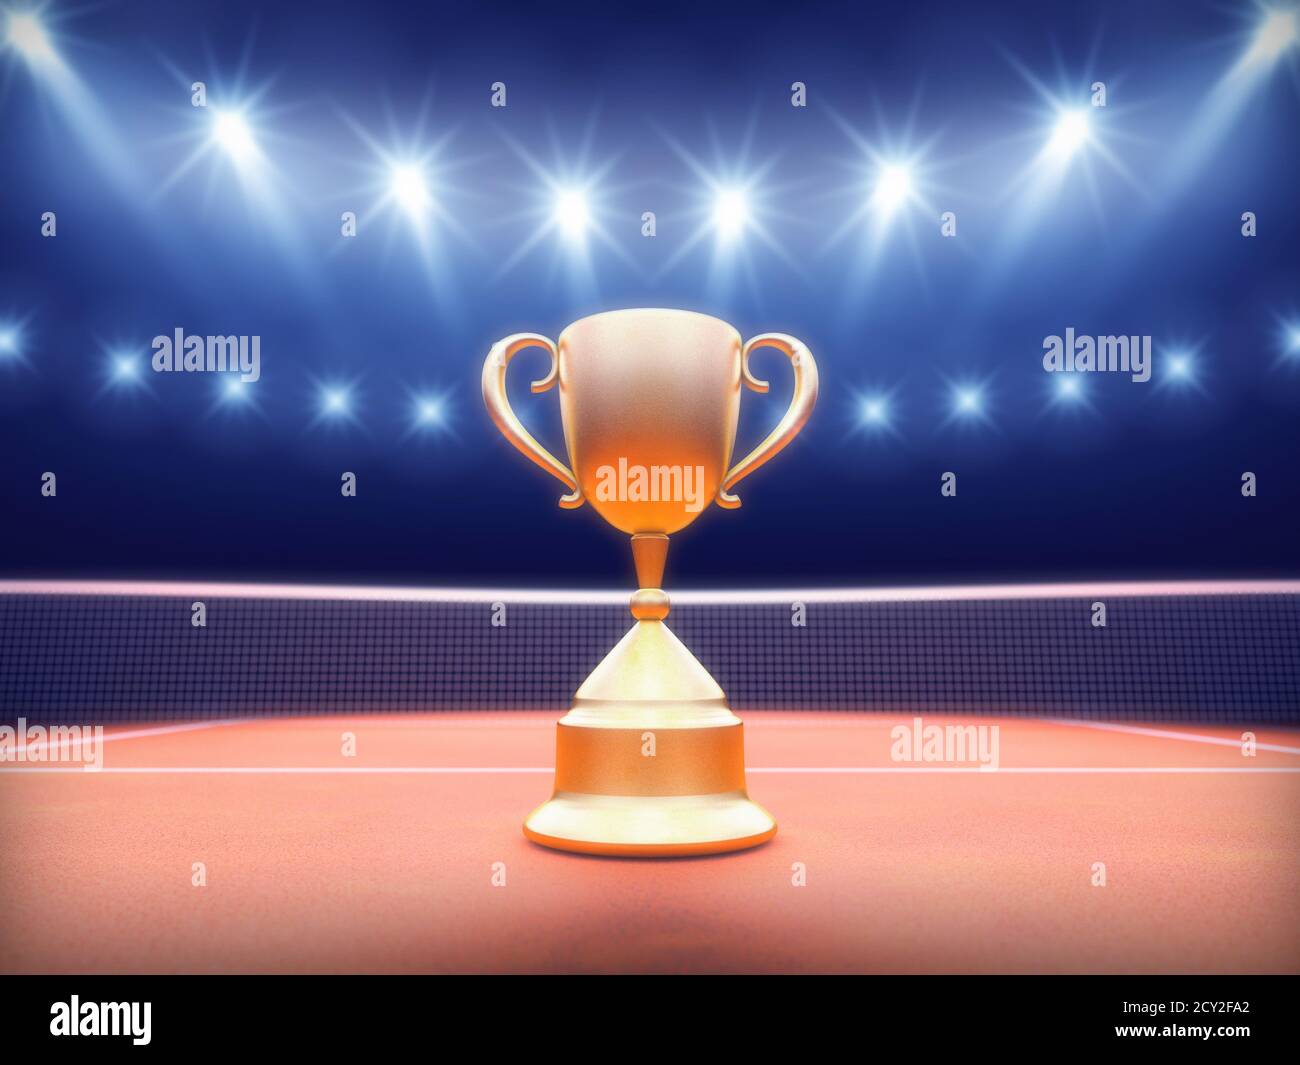 Copa de oro en cancha de tenis de arcilla estadio iluminado por focos, concepto ganador del torneo de tenis Foto de stock